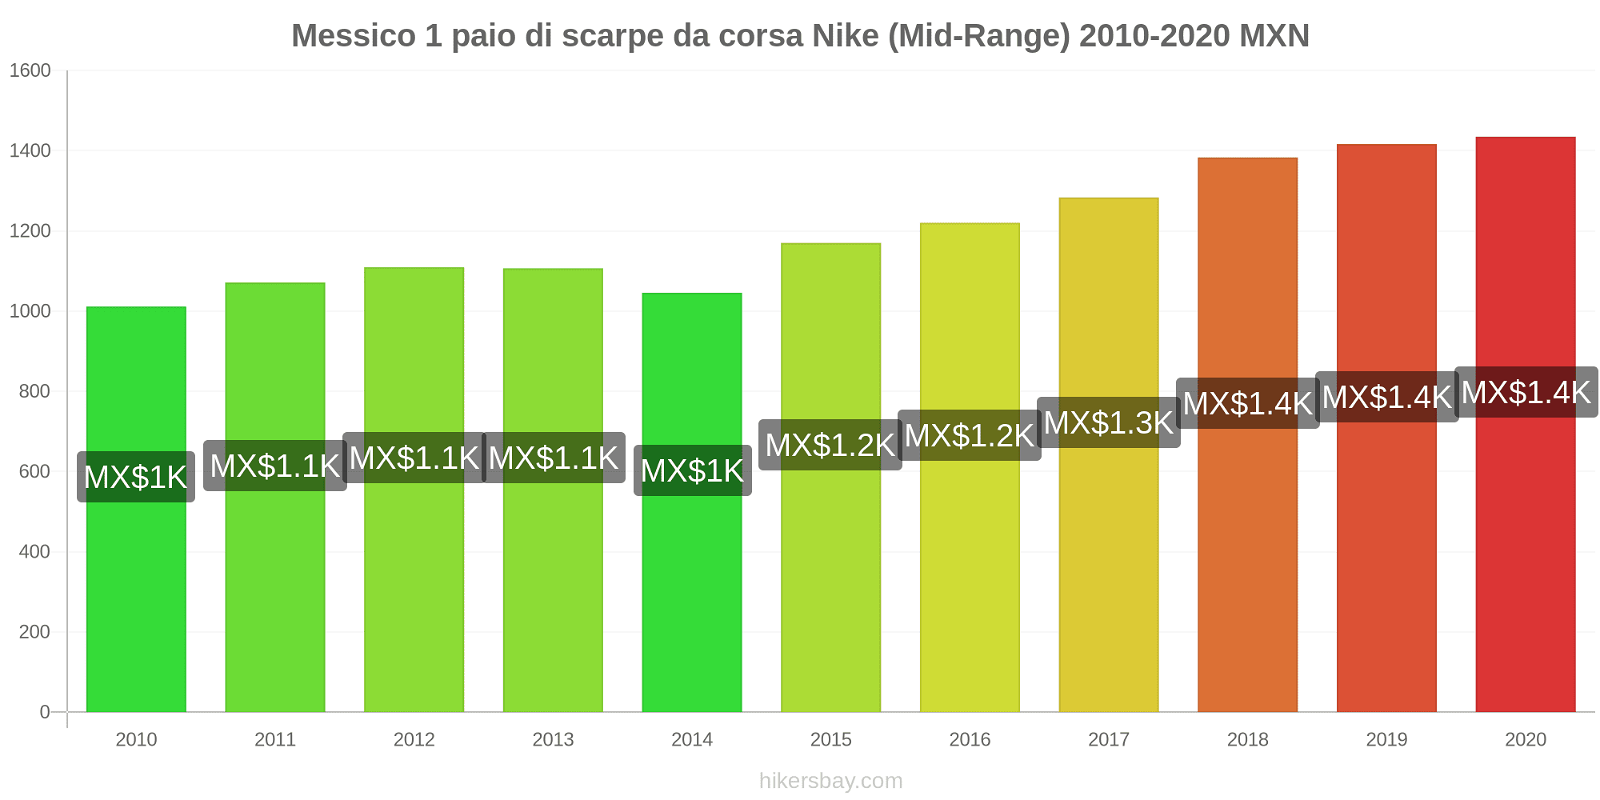 Messico variazioni di prezzo 1 paio di scarpe da corsa Nike (simile) hikersbay.com